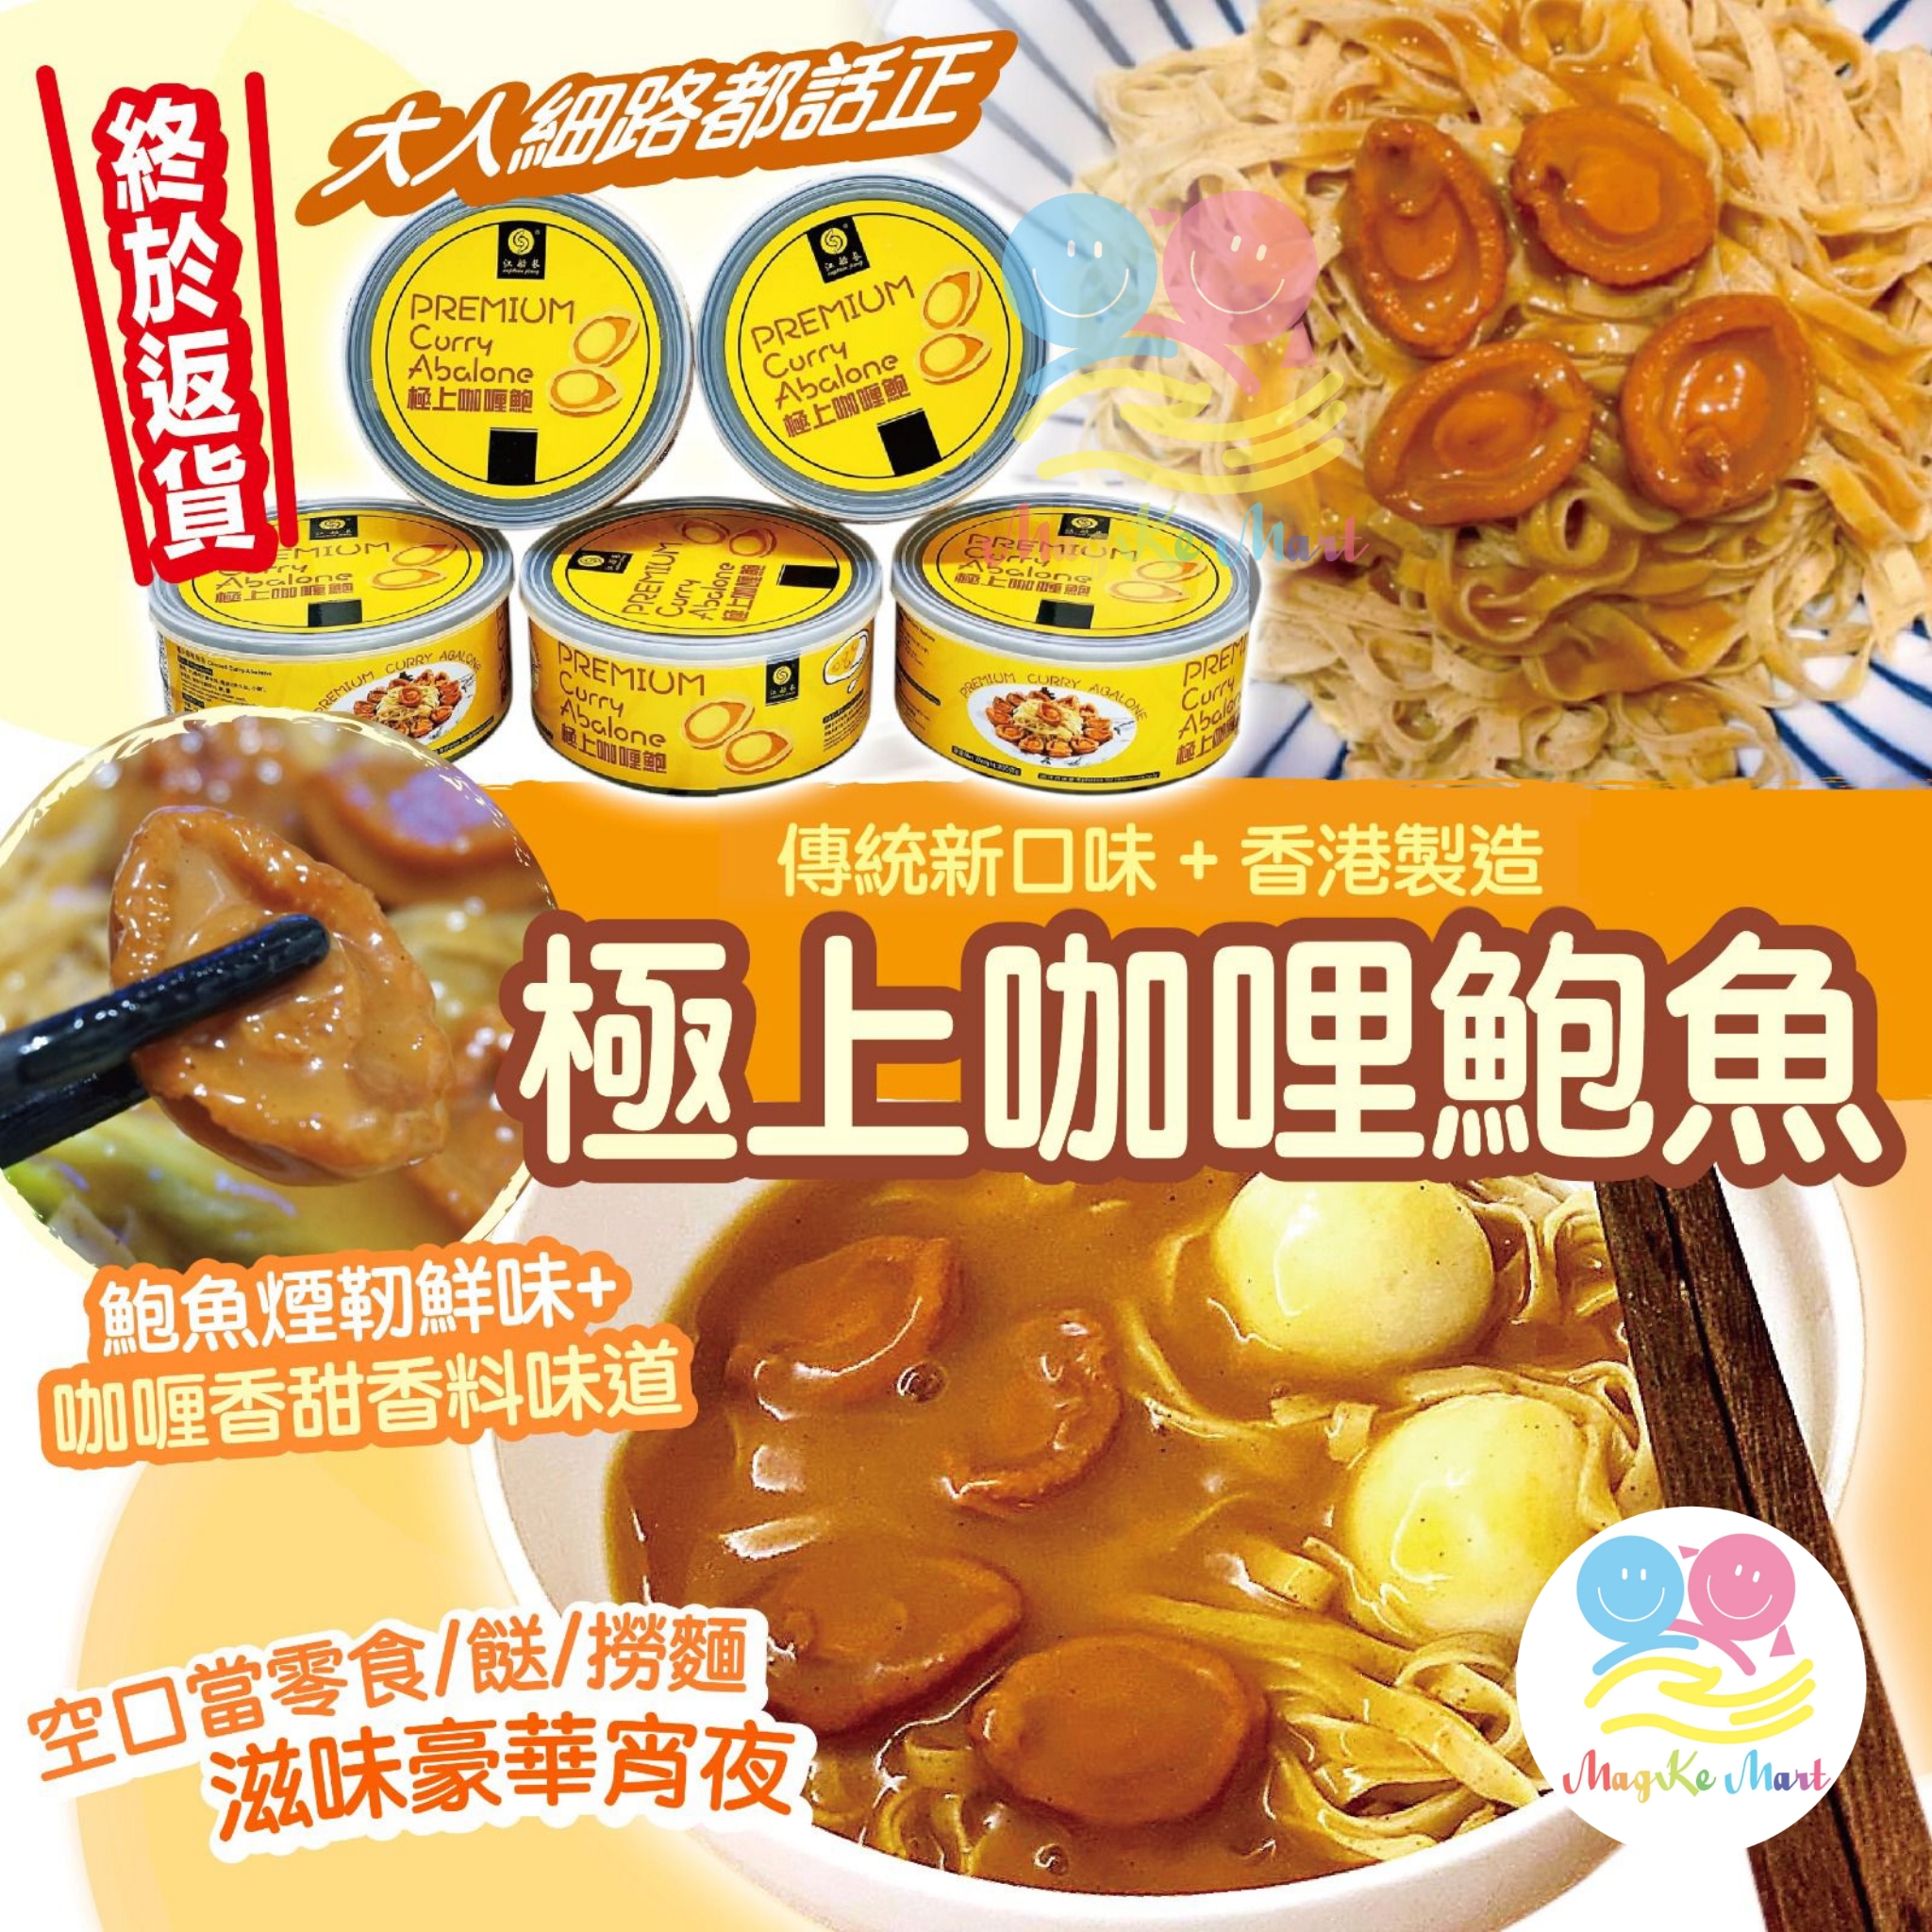 香港永樂粉麵廠極上咖哩鮑魚(1罐4隻)